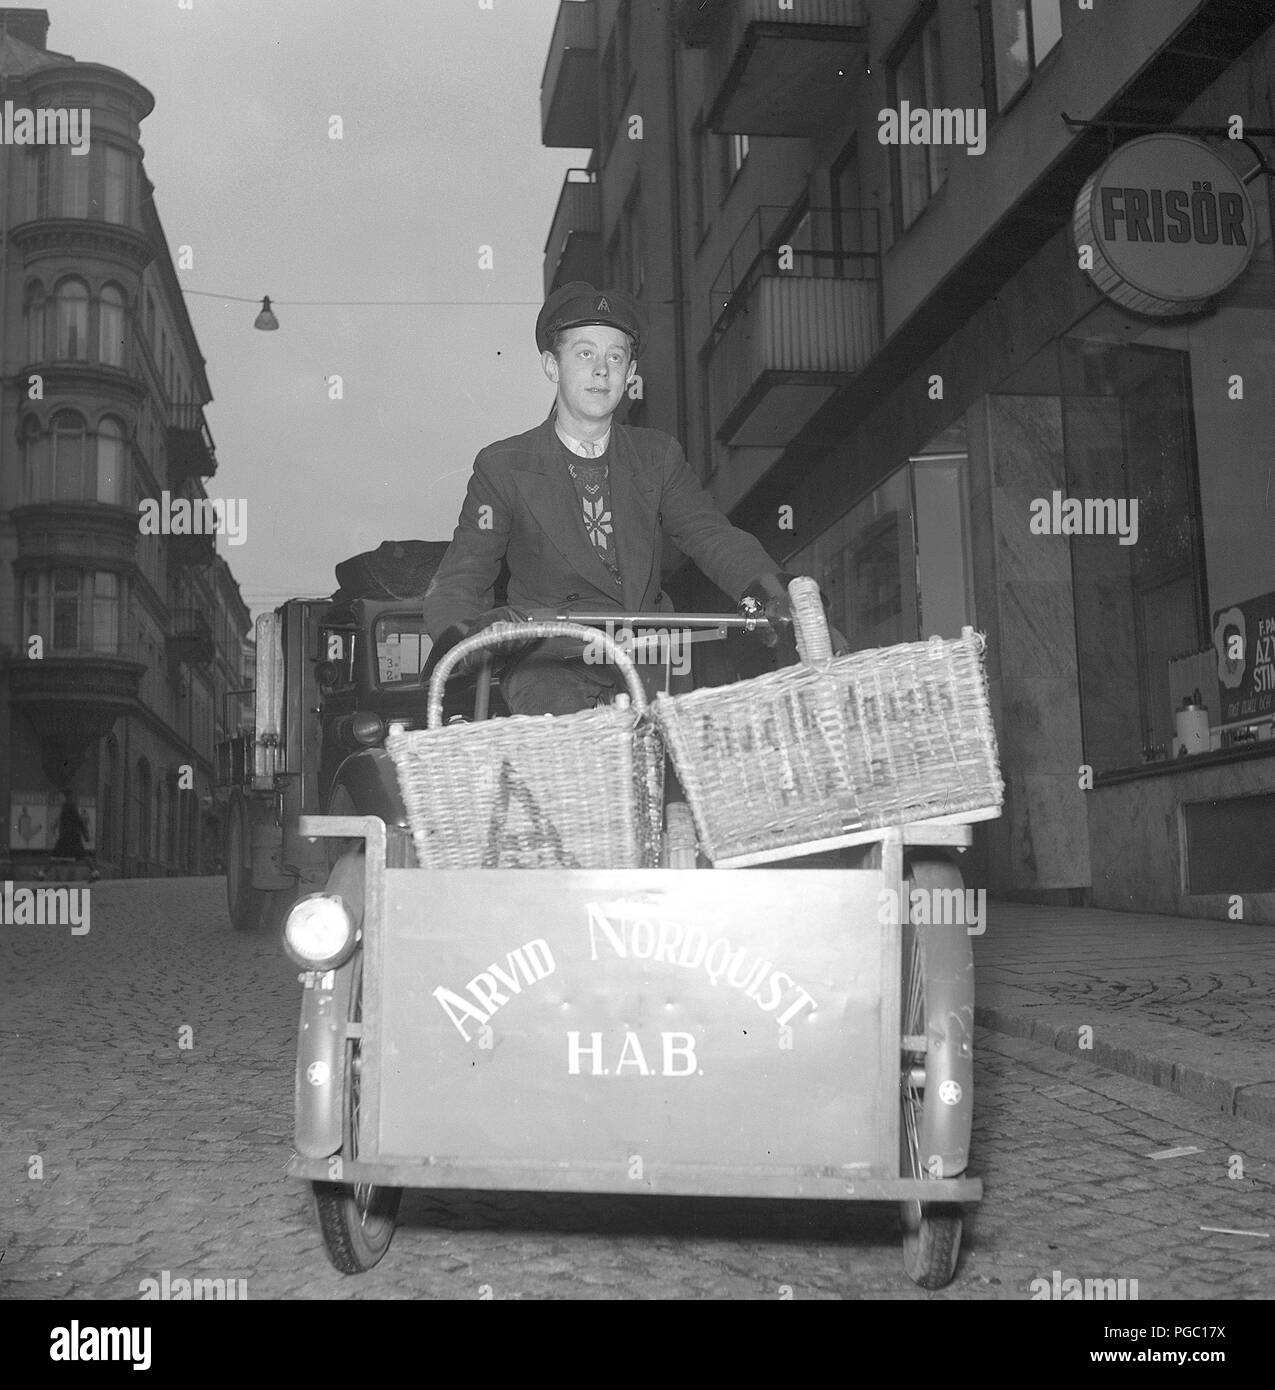 1940s transport à vélo. Un homme qui travaille comme livreur avec des provisions sur son vélo pour être livré aux clients de la société Arvid Nordquist. Suède 1942. Photo Kristoffersson A125-2 Banque D'Images